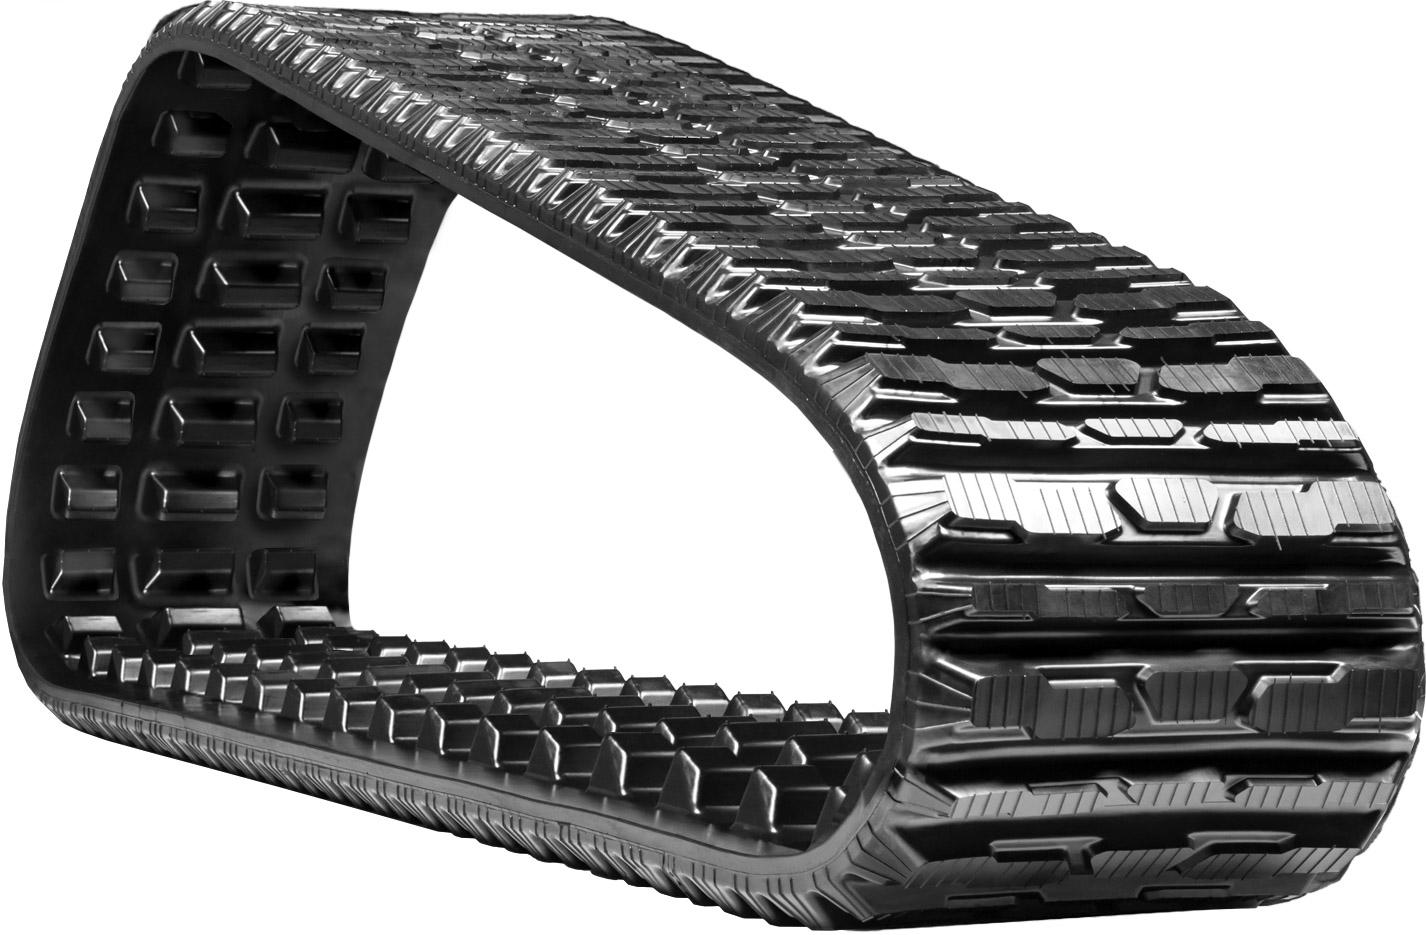 https://www.skidsteers.com/uploads/product-gallery/2767-18-heavy-duty-multi-bar-pattern-rubber-track-457x101-6x50-steel-cord-track-2.jpg